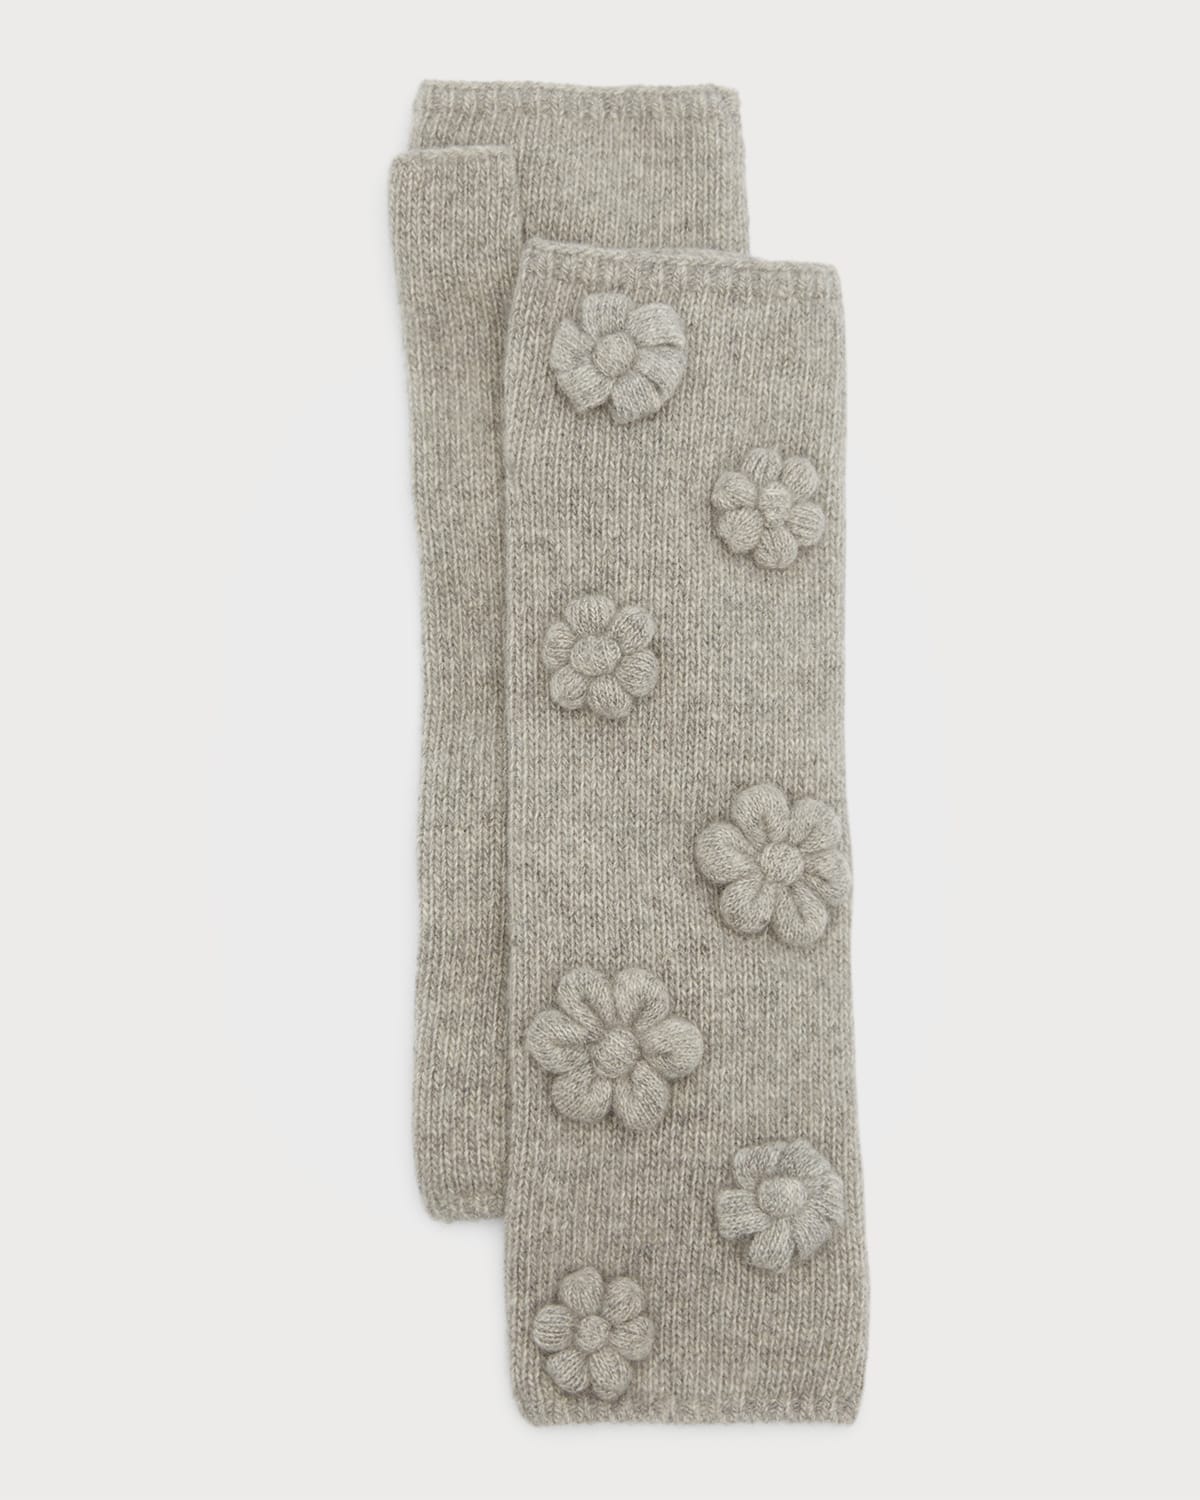 Carolyn Rowan Long Fingerless Knitted Flower Gloves